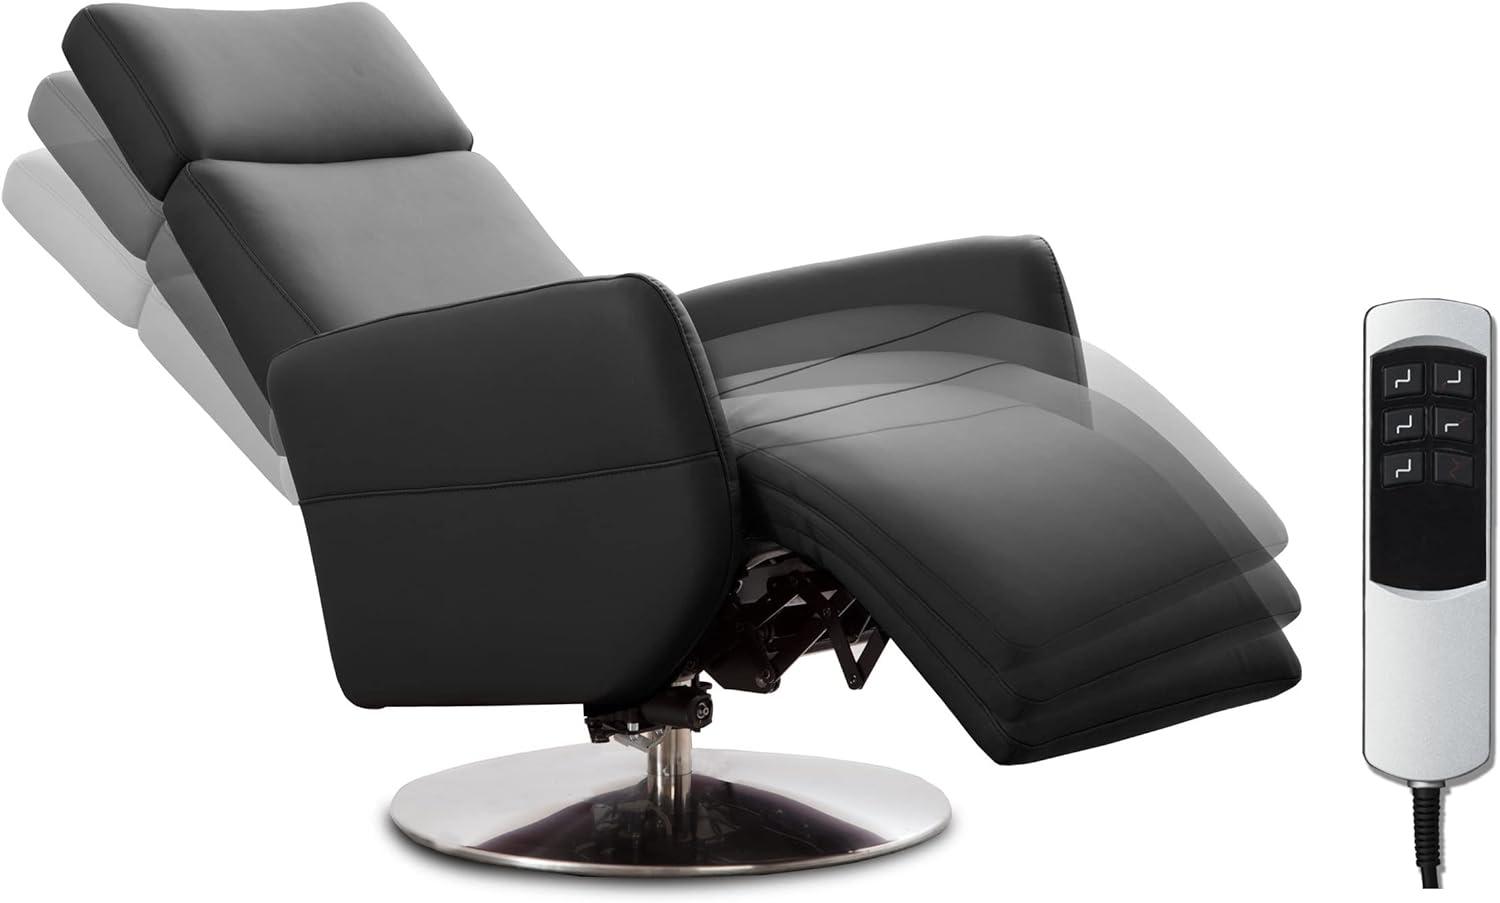 Cavadore TV-Sessel Cobra mit 2 E-Motoren / Elektrischer Fernsehsessel mit Fernbedienung / Relaxfunktion, Liegefunktion / Ergonomie M / Belastbar bis 130 kg / 71 x 110 x 82 / Echtleder Schwarz Bild 1